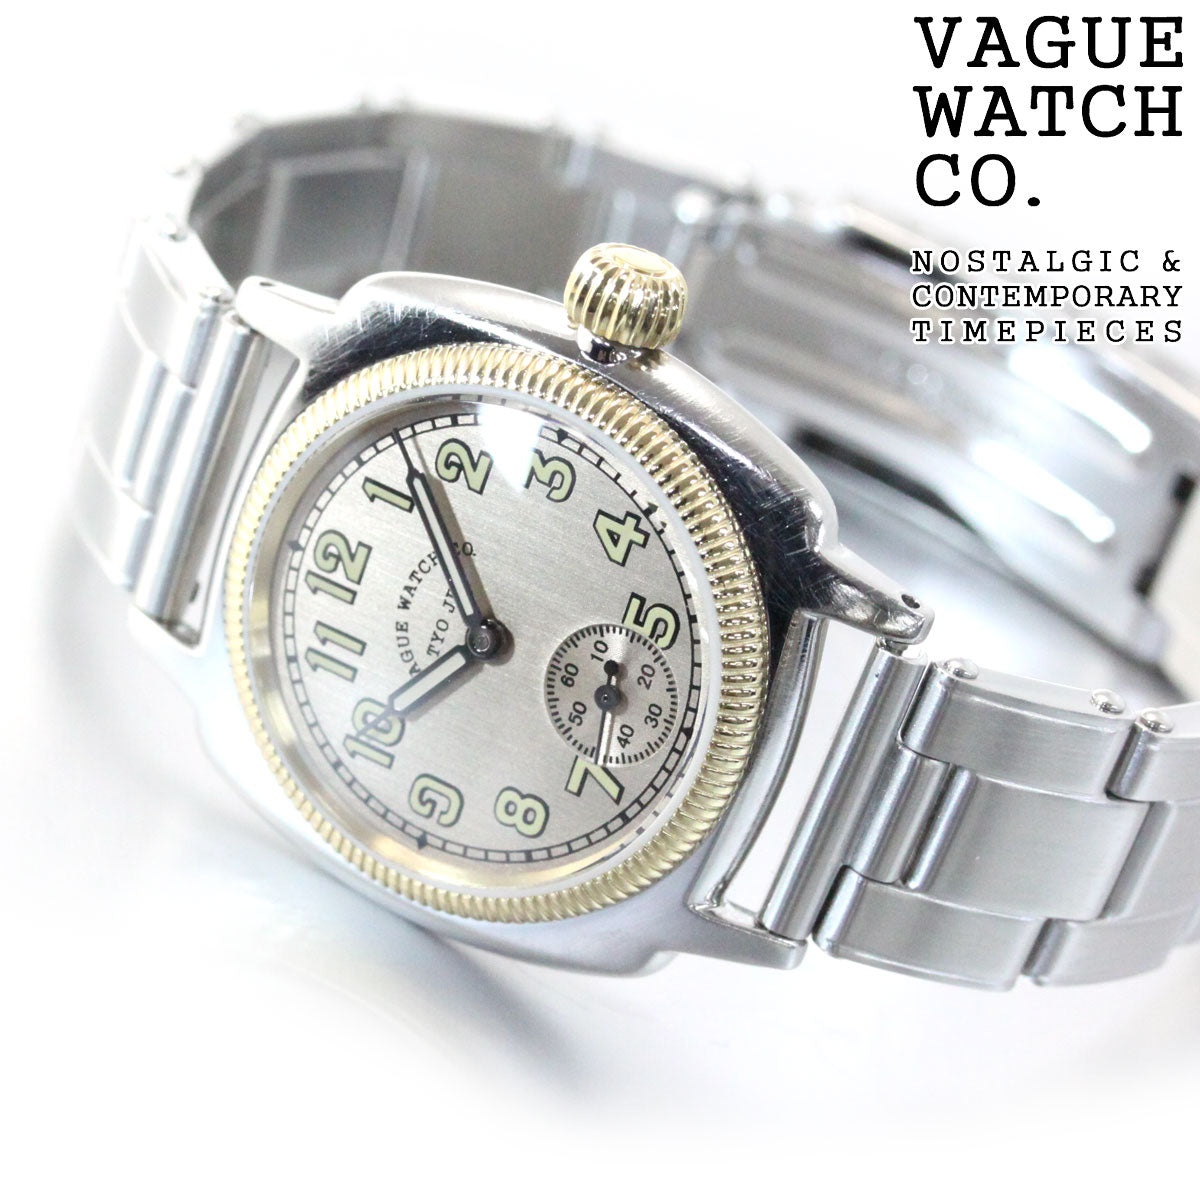 ヴァーグウォッチ VAGUE WATCH Co. 腕時計 COUSSIN EARLY STAINLESS BELT メンズ クッサン エクステンションベルト CO-L-008-SB